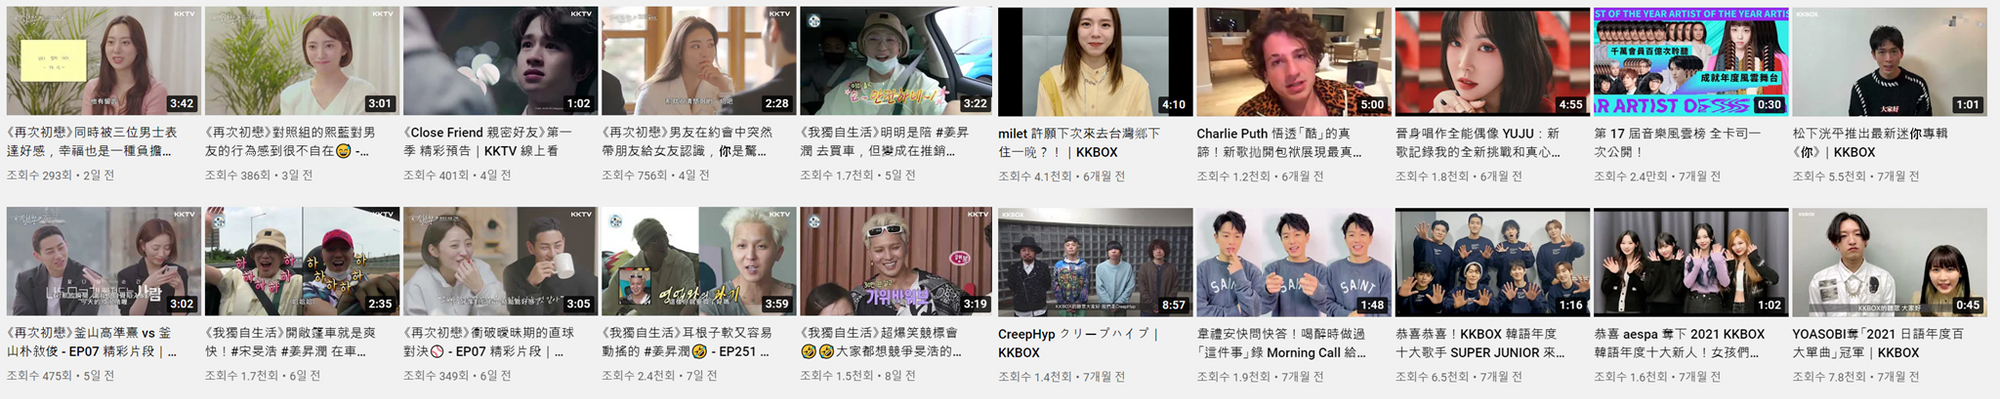 (좌) KKBOX에서 운영하는 동영상 스트리밍 서비스 KKTV 유튜브 채널과 (우) KKBOX 공식 유튜브 채널. 대만 플랫폼임에도 한국과 일본의 아티스트가 활발히 출연하고 있으며, 한일 드라마와 예능 등이 곧장 업로드 되어 있었다.